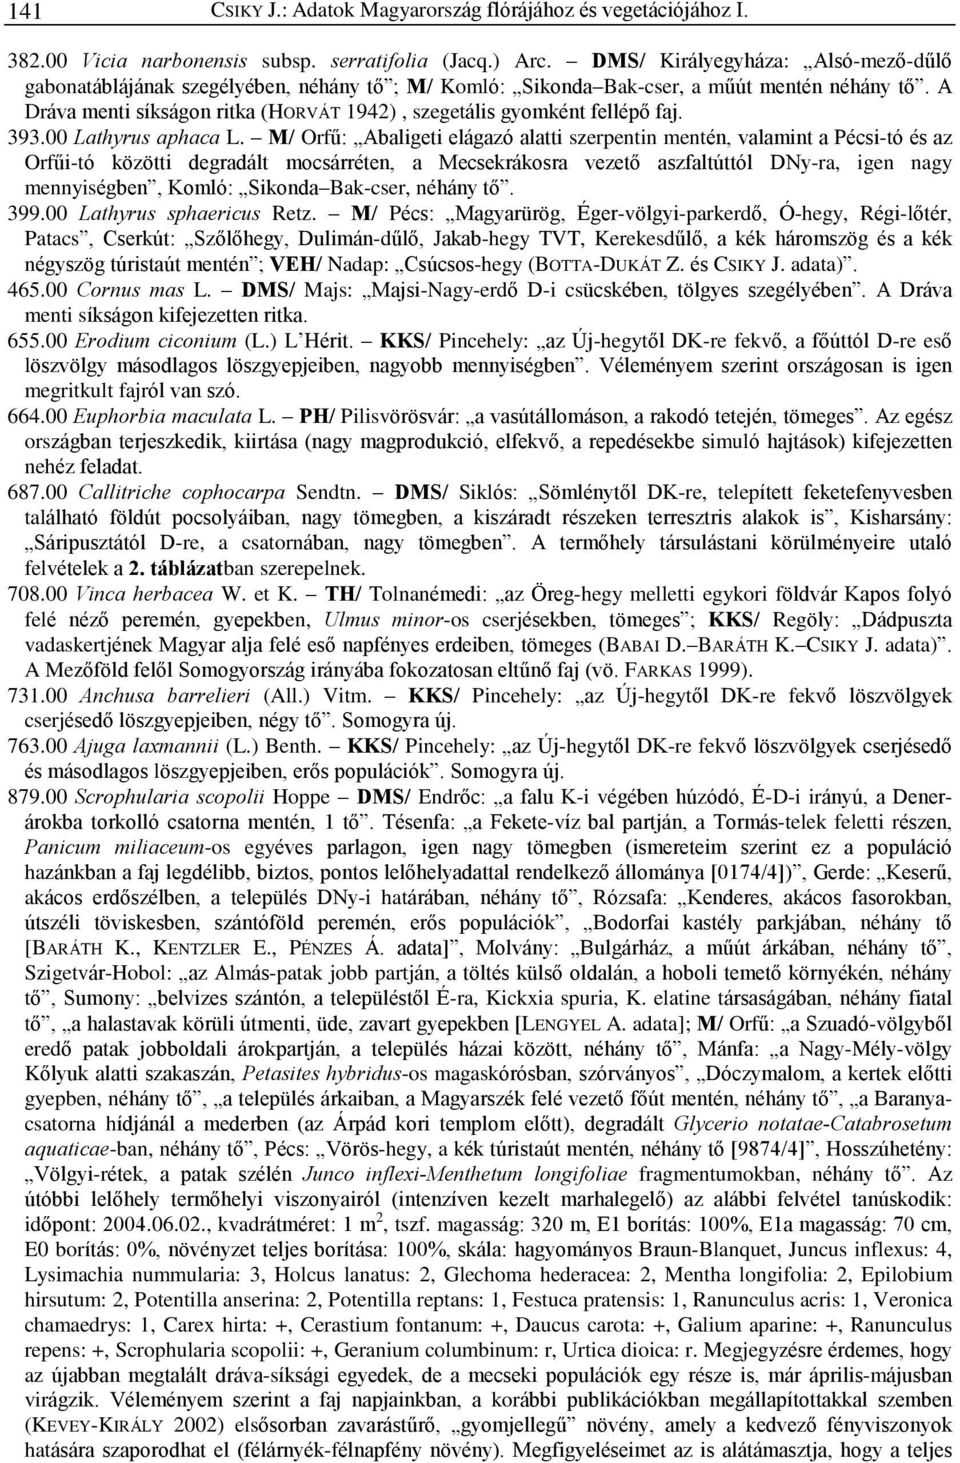 A Dráva menti síkságon ritka (HORVÁT 1942), szegetális gyomként fellépõ faj. 393.00 Lathyrus aphaca L.